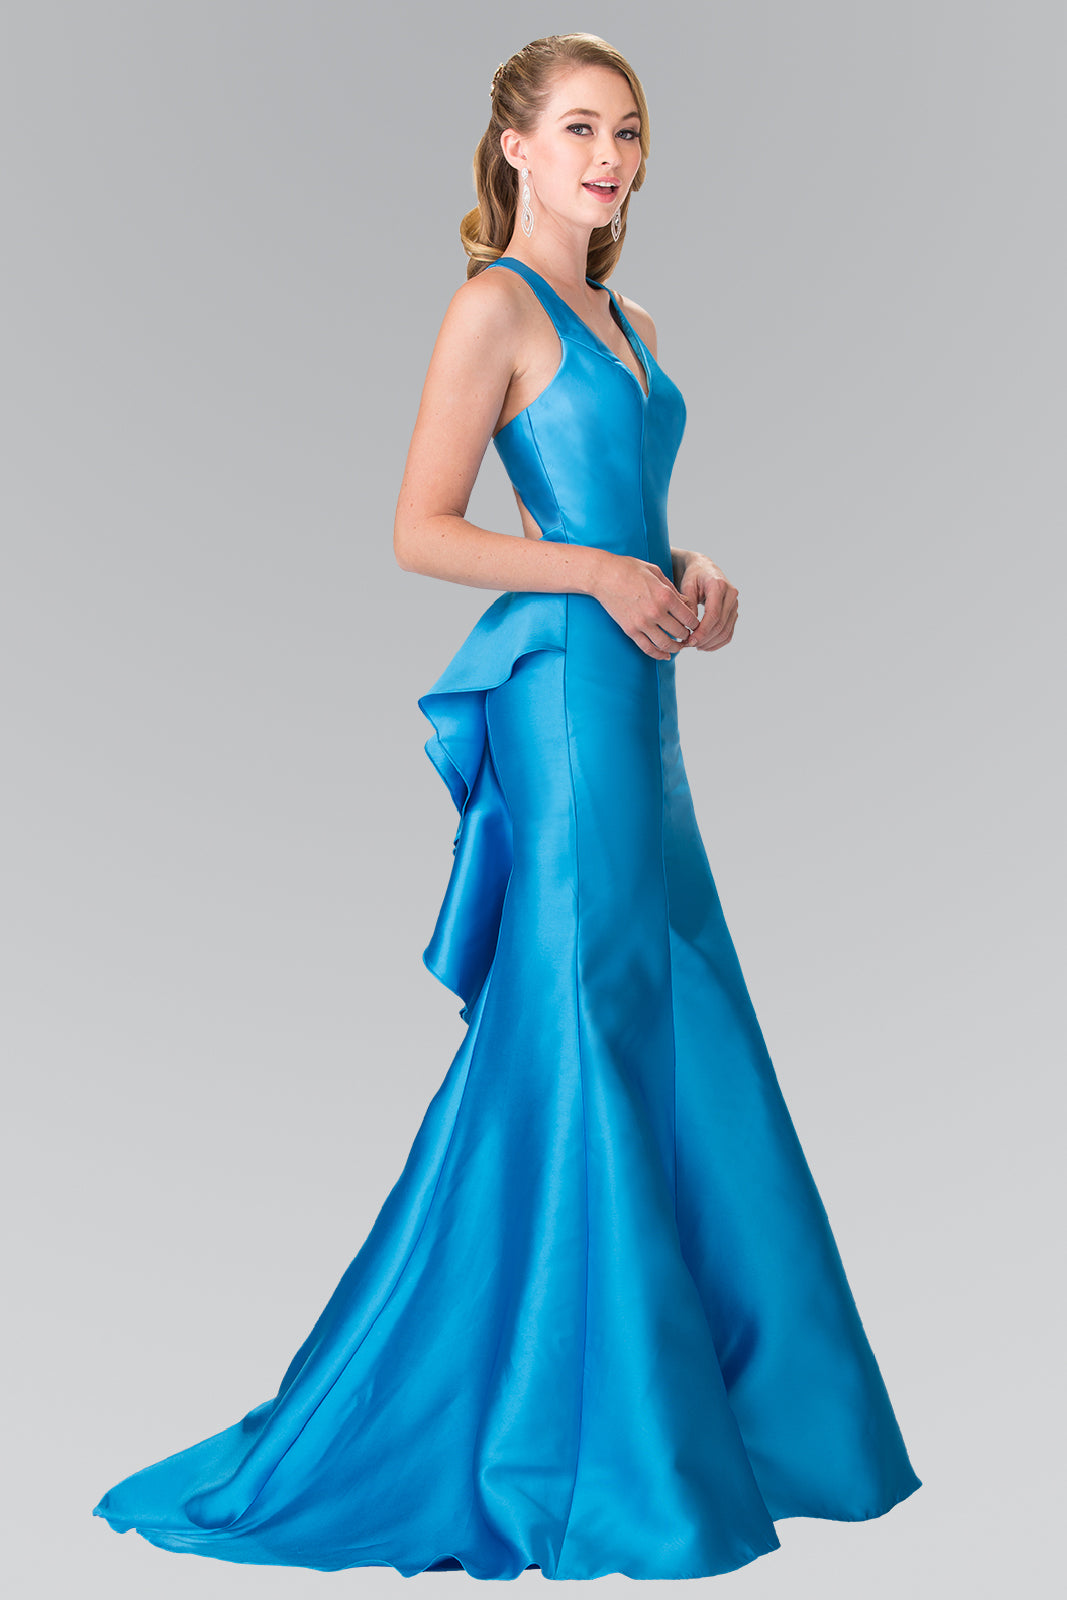 La Merchandise LAS2224 Turquoise Halter Mikado Mermaid Prom Dress - TURQUOISE - LA Merchandise